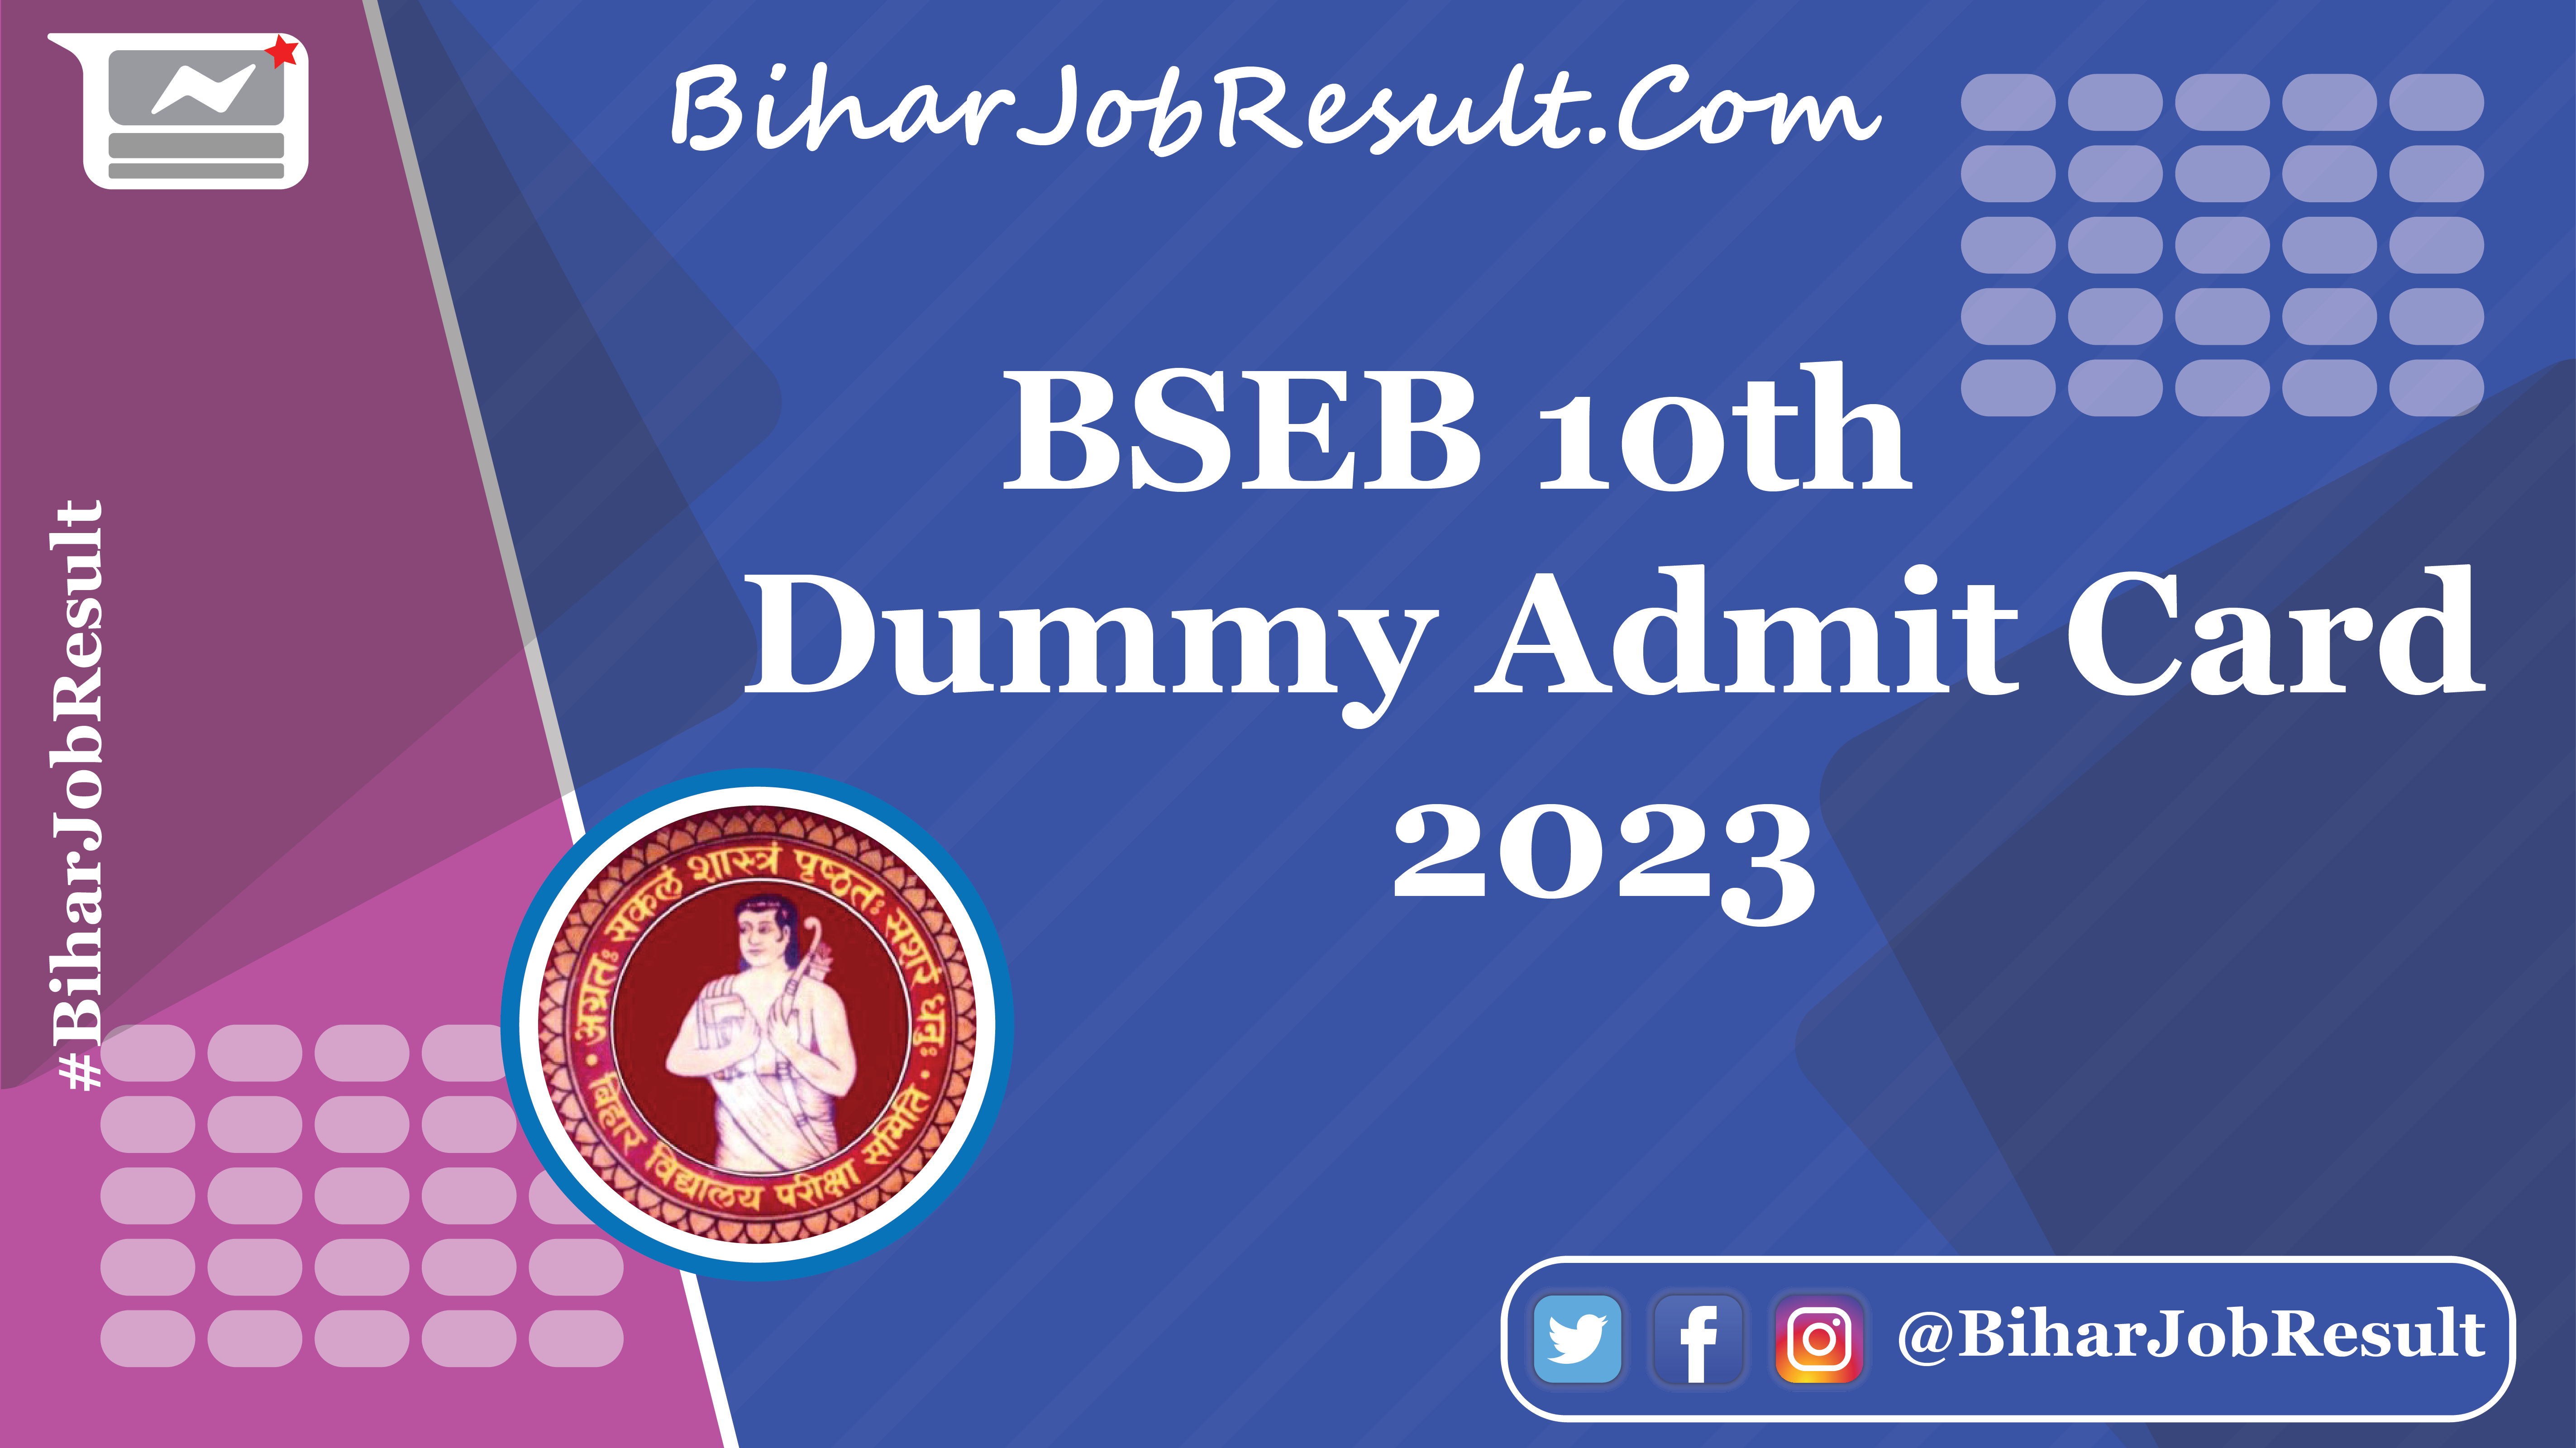 BSEB 10th Dummy Admit Card 2023